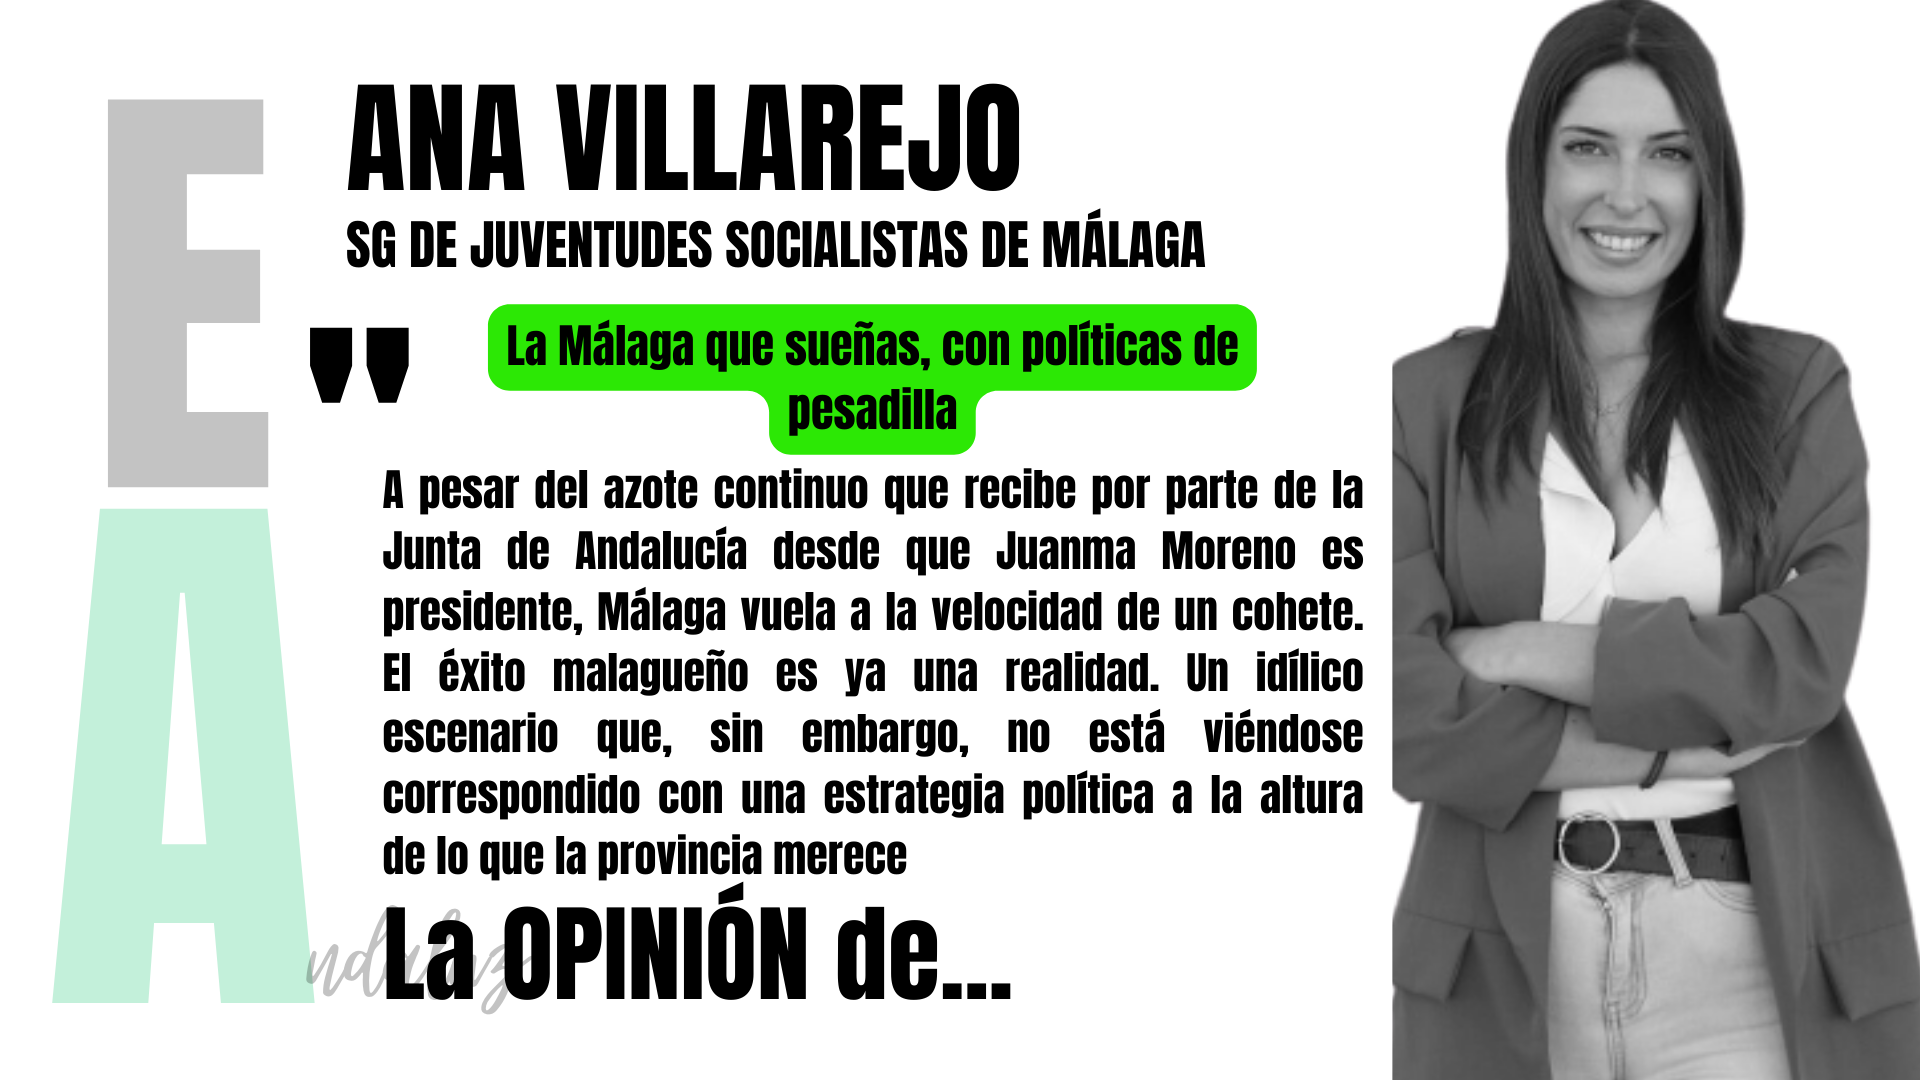 Artículo de Ana Villarejo, secretaria general de JSA Málaga: "La Malaga que sueñas, con políticas de pesadilla"